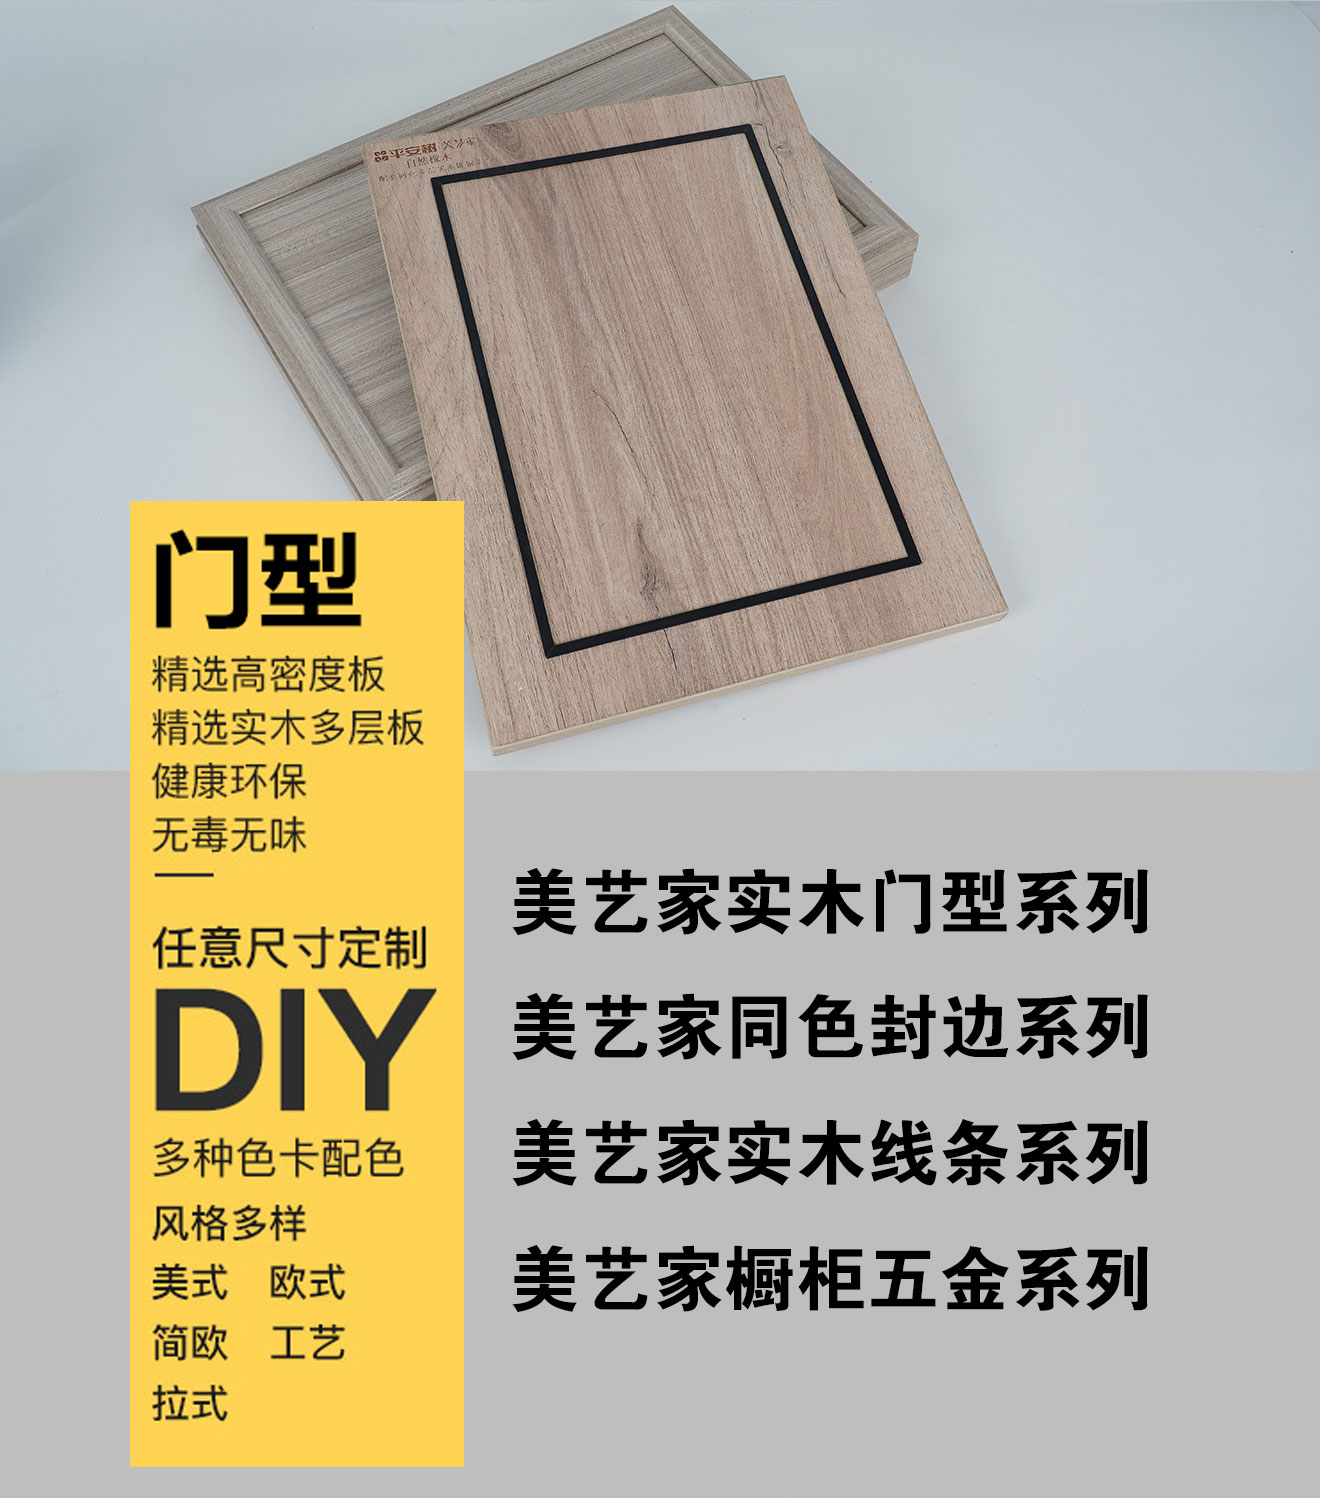 免漆生态板的用途有哪些？免漆生态板的特点|产品展示|西林木业环保生态板